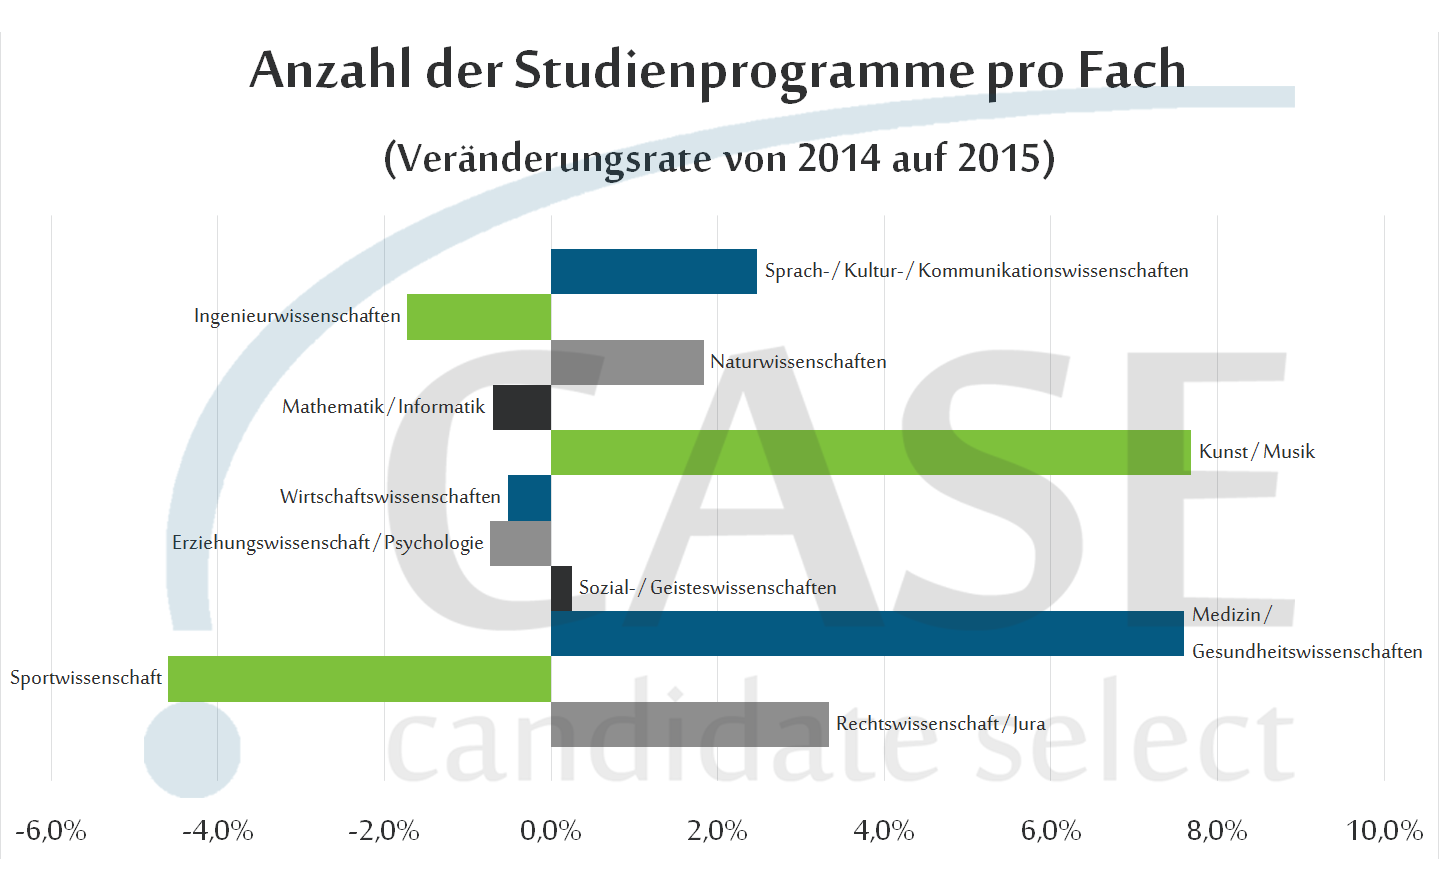 Das Fachangebot für Studierende in Deutschland verändert sich